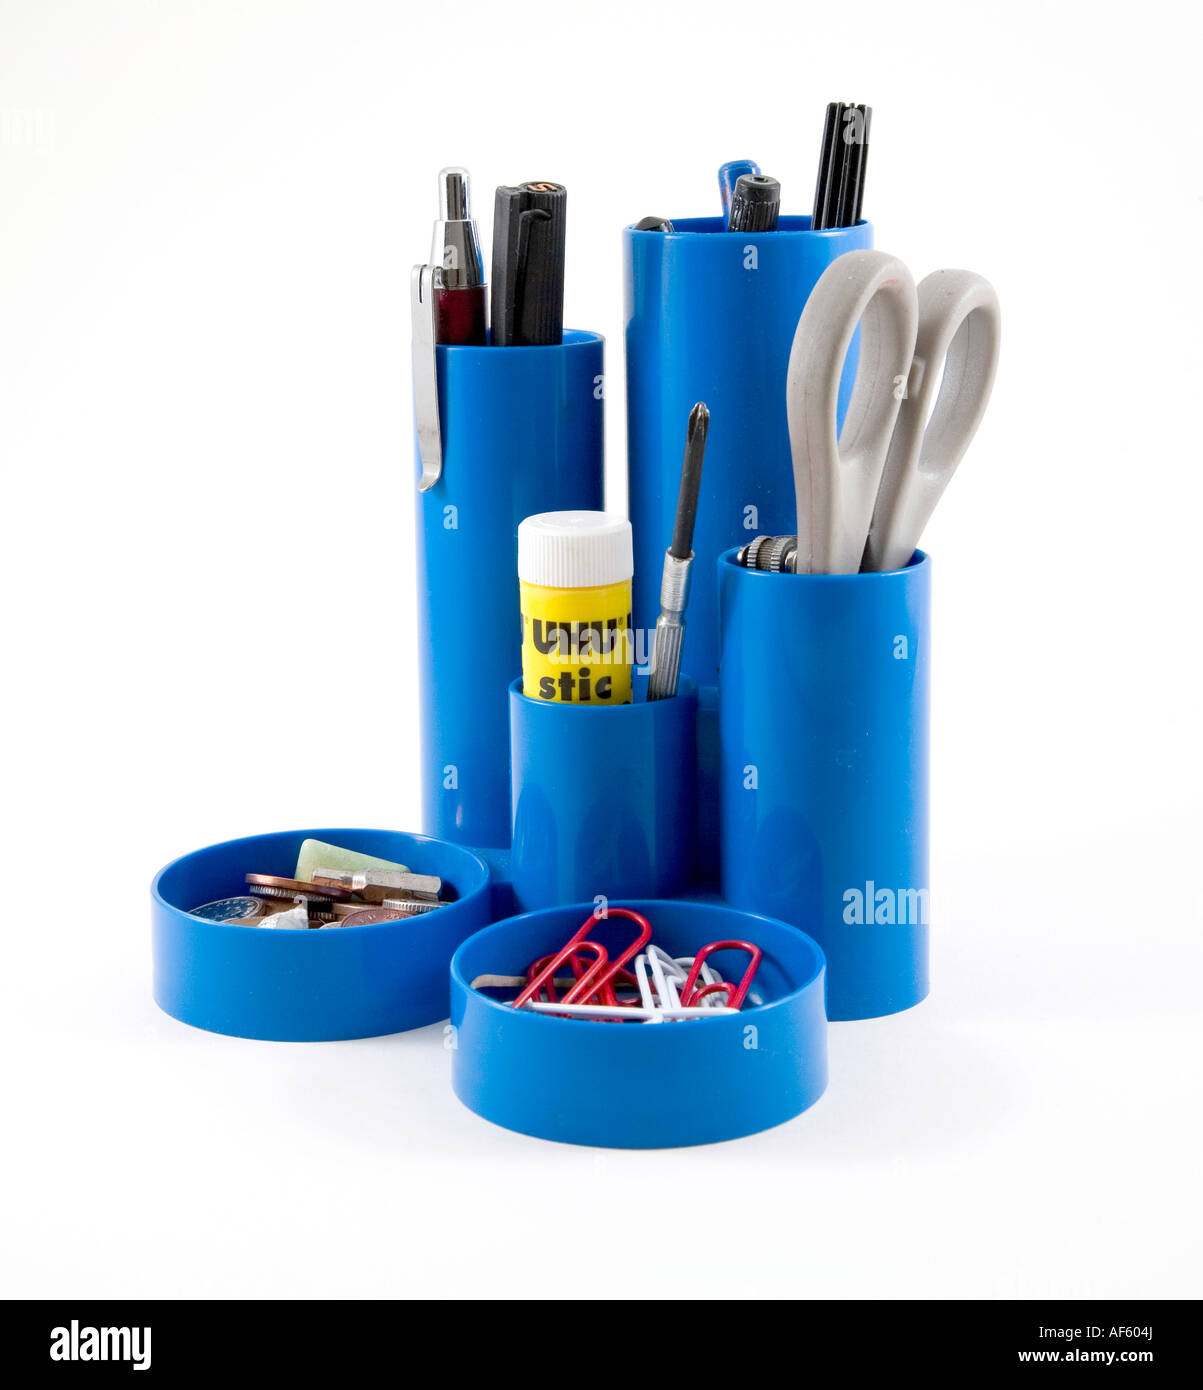 https://c8.alamy.com/comp/AF604J/blue-pen-holder-with-pens-and-office-implements-on-white-background-AF604J.jpg